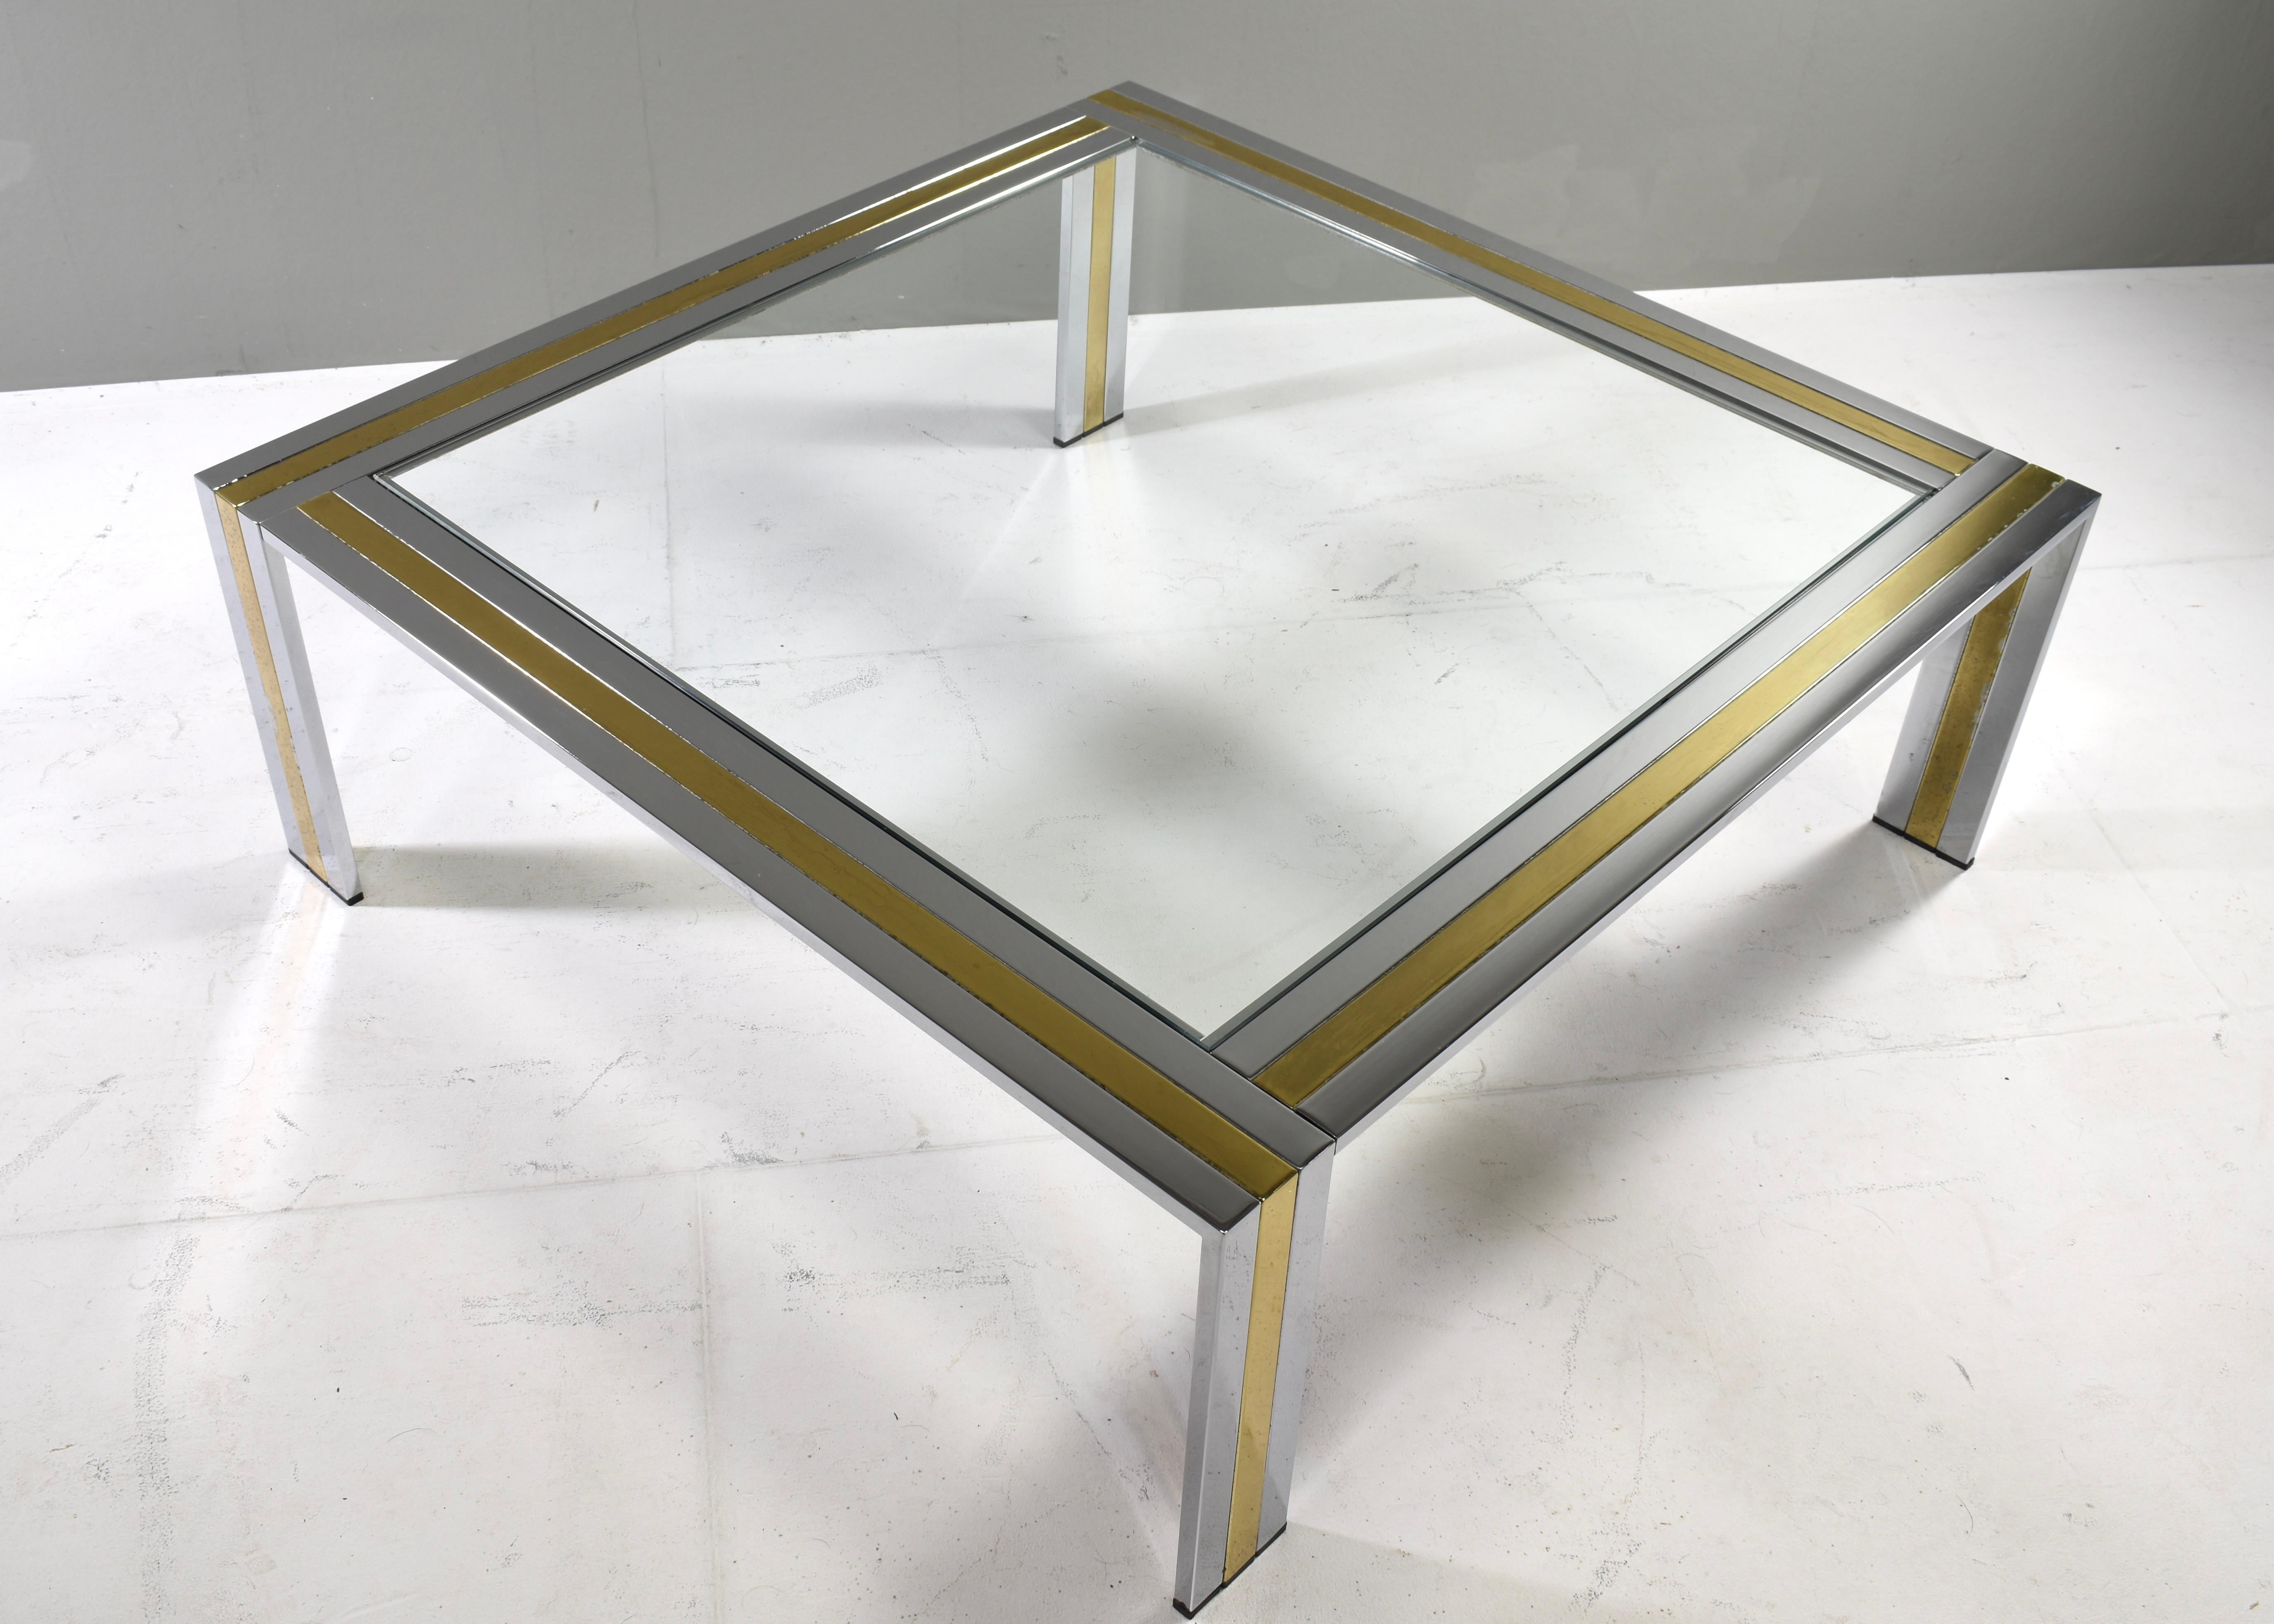 Table basse carrée Renato Zevi en chrome, métal laitonné et verre transparent, Italie - vers 1970.
La table est en bon état avec des signes d'âge, d'utilisation et de patine. Le chrome est globalement en très bon état. Le laiton présente à certains